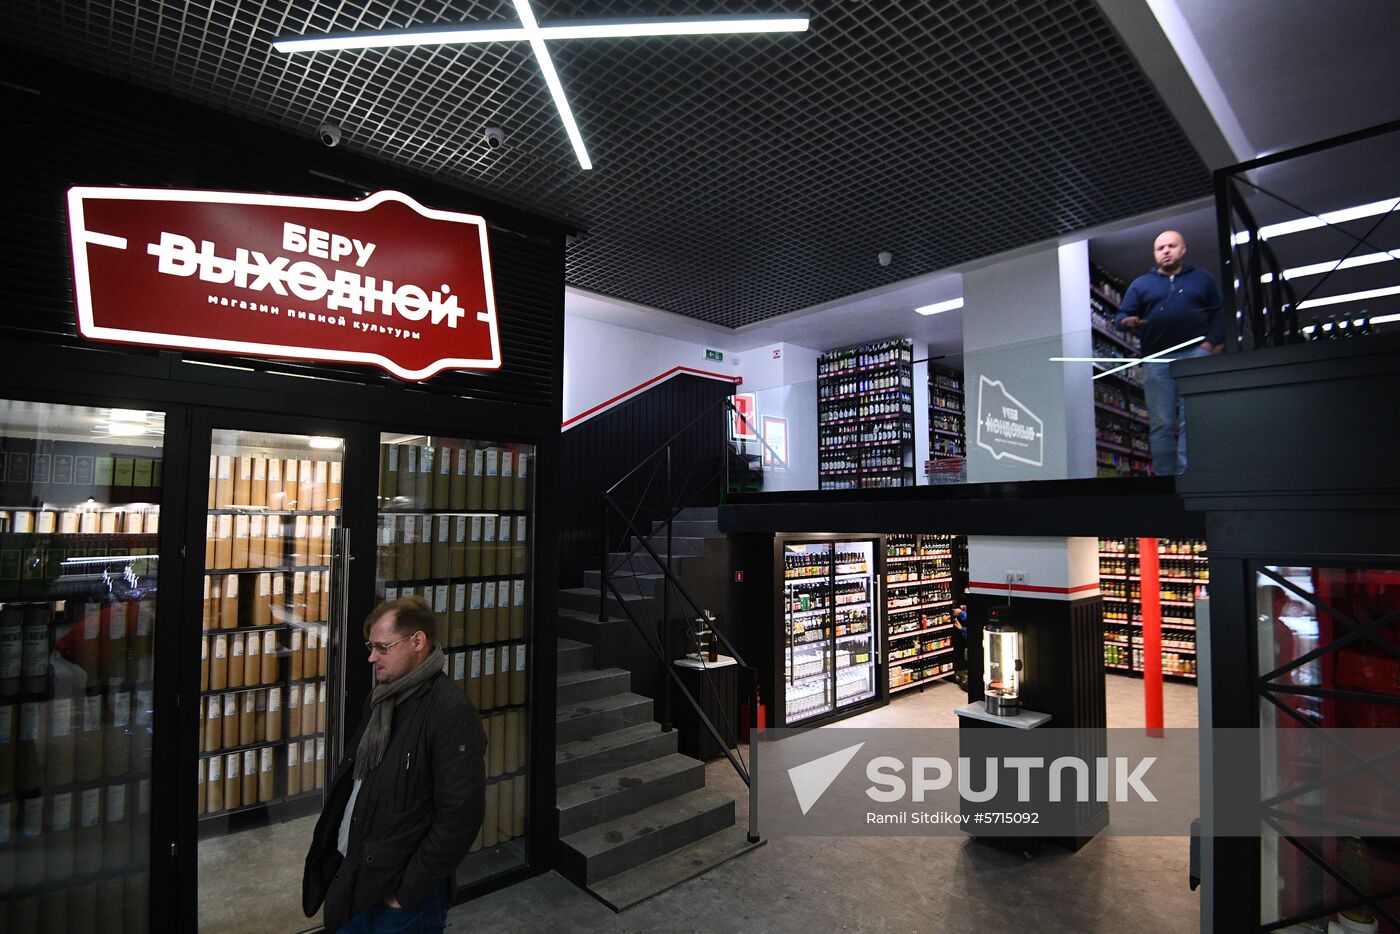 Russia Beer Shop